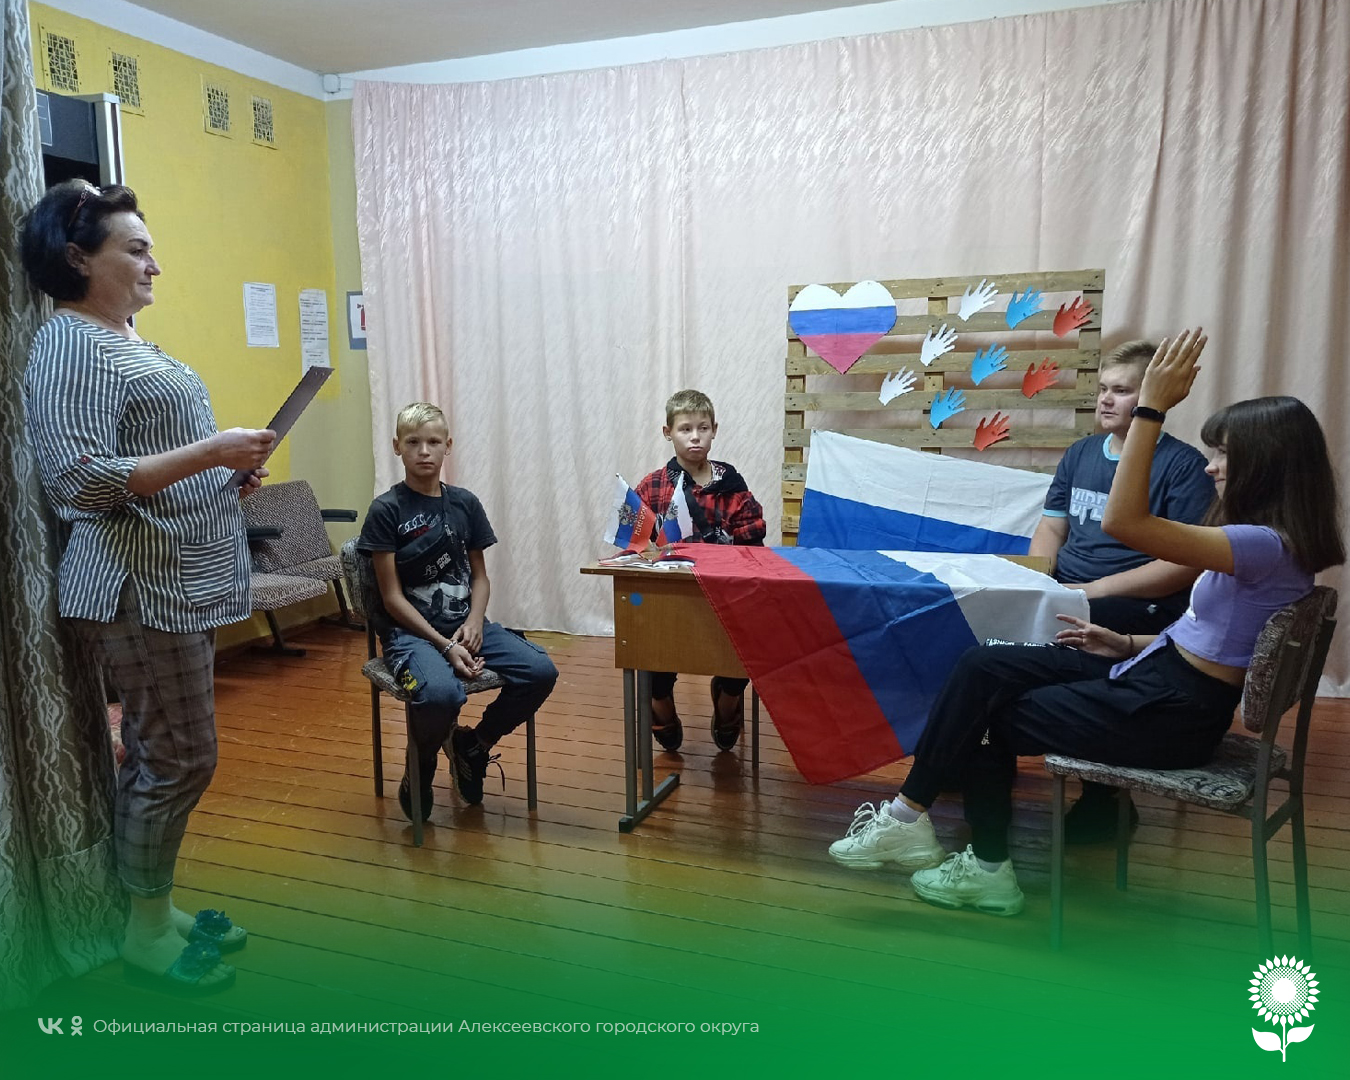 Сегодня во всех культурных учреждениях Алексеевского городского округа прошли массовые тематические мероприятия, посвященные Дню Государственного флага Российской Федерации